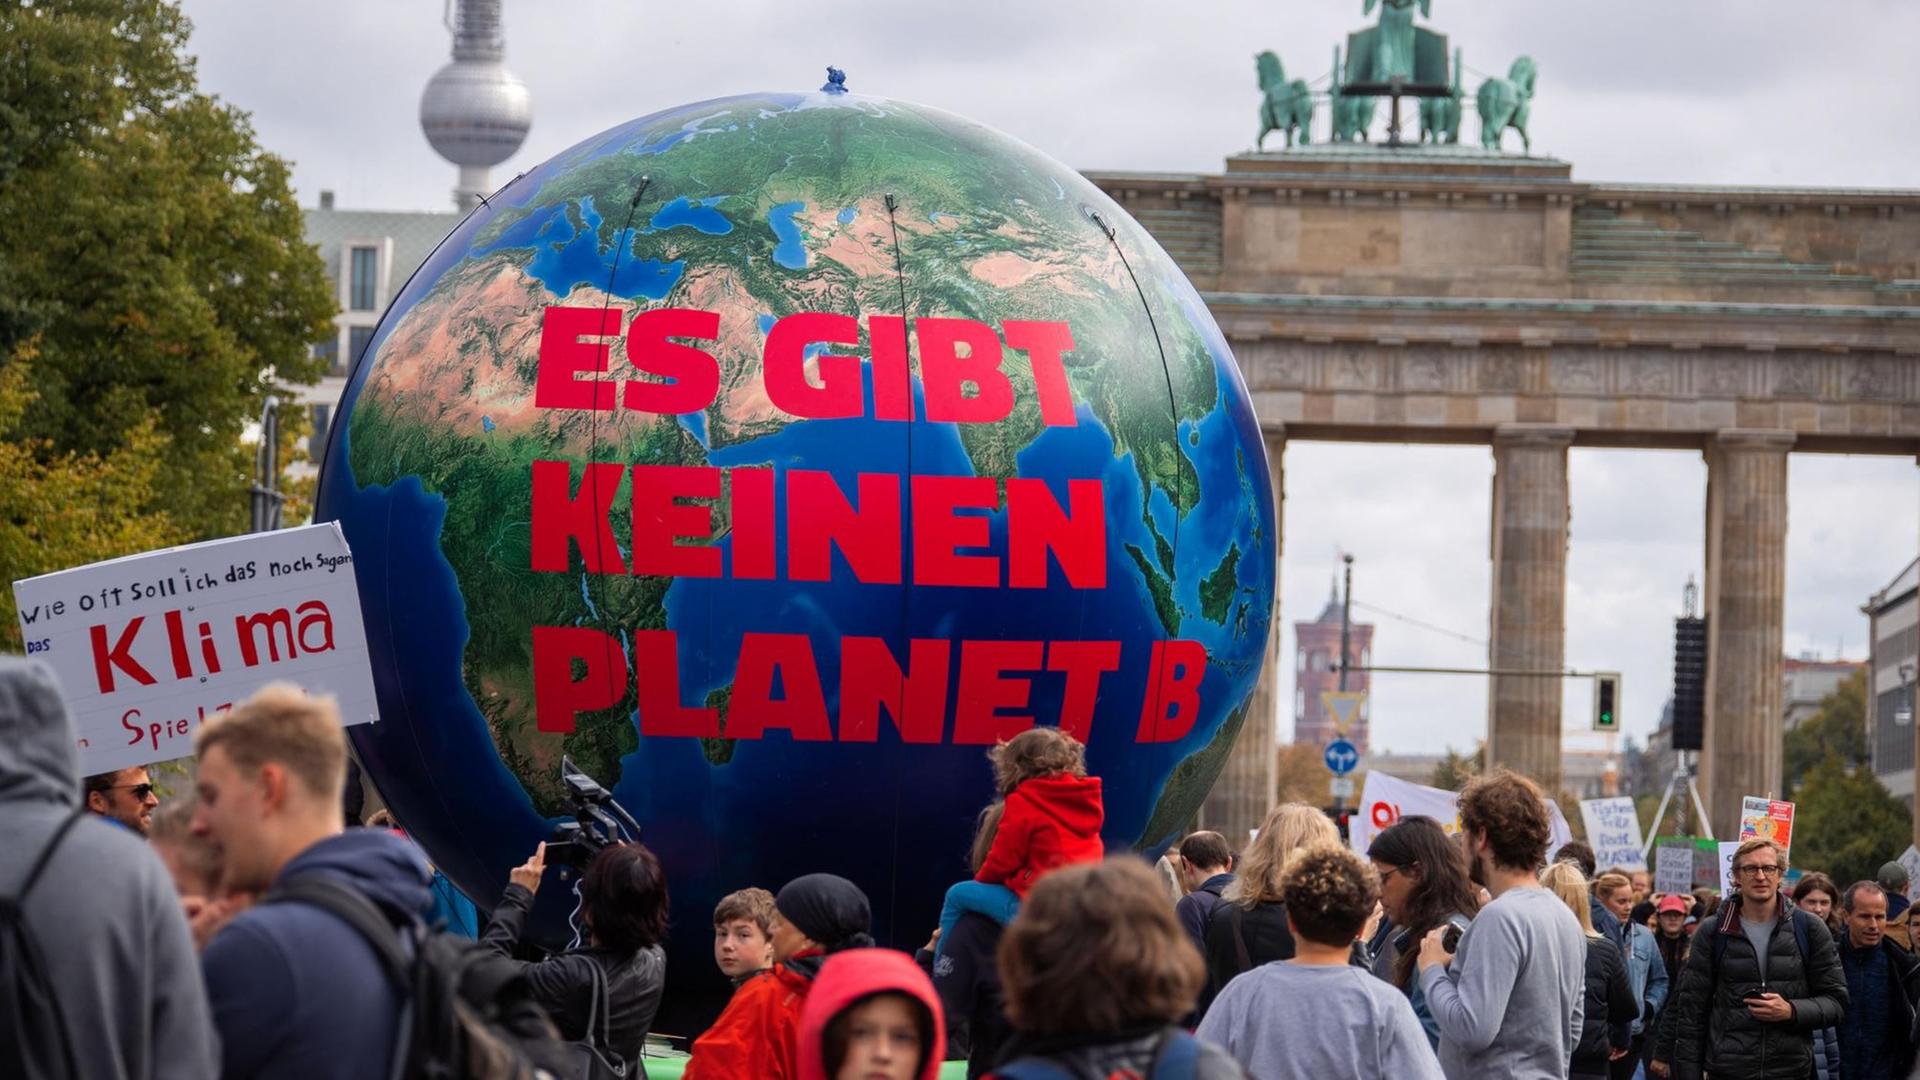  Eine Erdkugel mit der Aufschrift "Es gibt keinen Planet B" steht vor dem Brandenburger Tor.